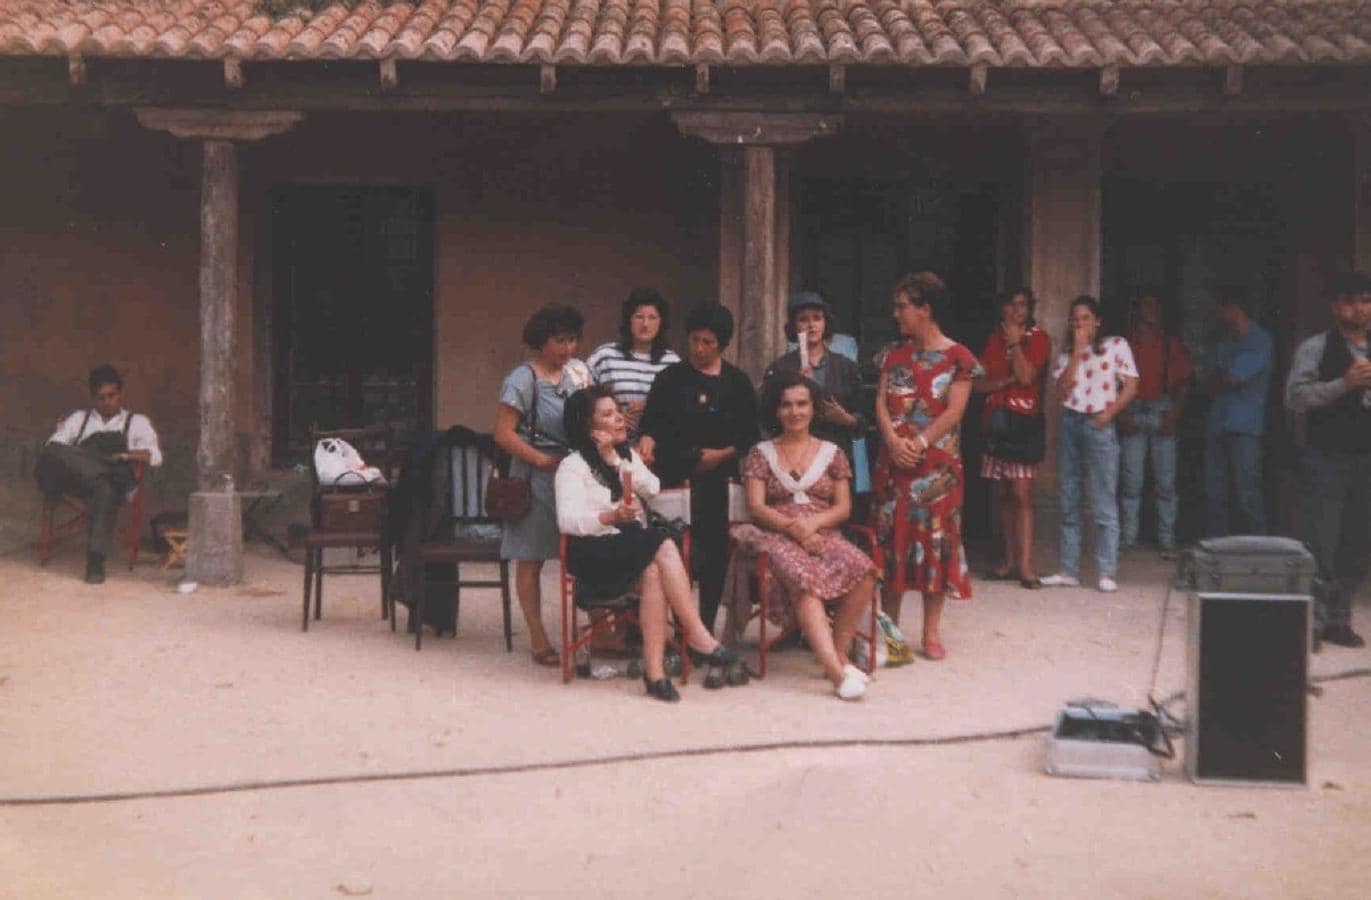 Las actrices Aurora Bautista y Chus Lampreave con otros miembros del equipo, en el rodaje de «Amanece, que no es poco», película dirigida por el albaceteño José Luis Cuerda. 1988. Molinicos (Albacete). Fondo Los Legados de la Tierra. 